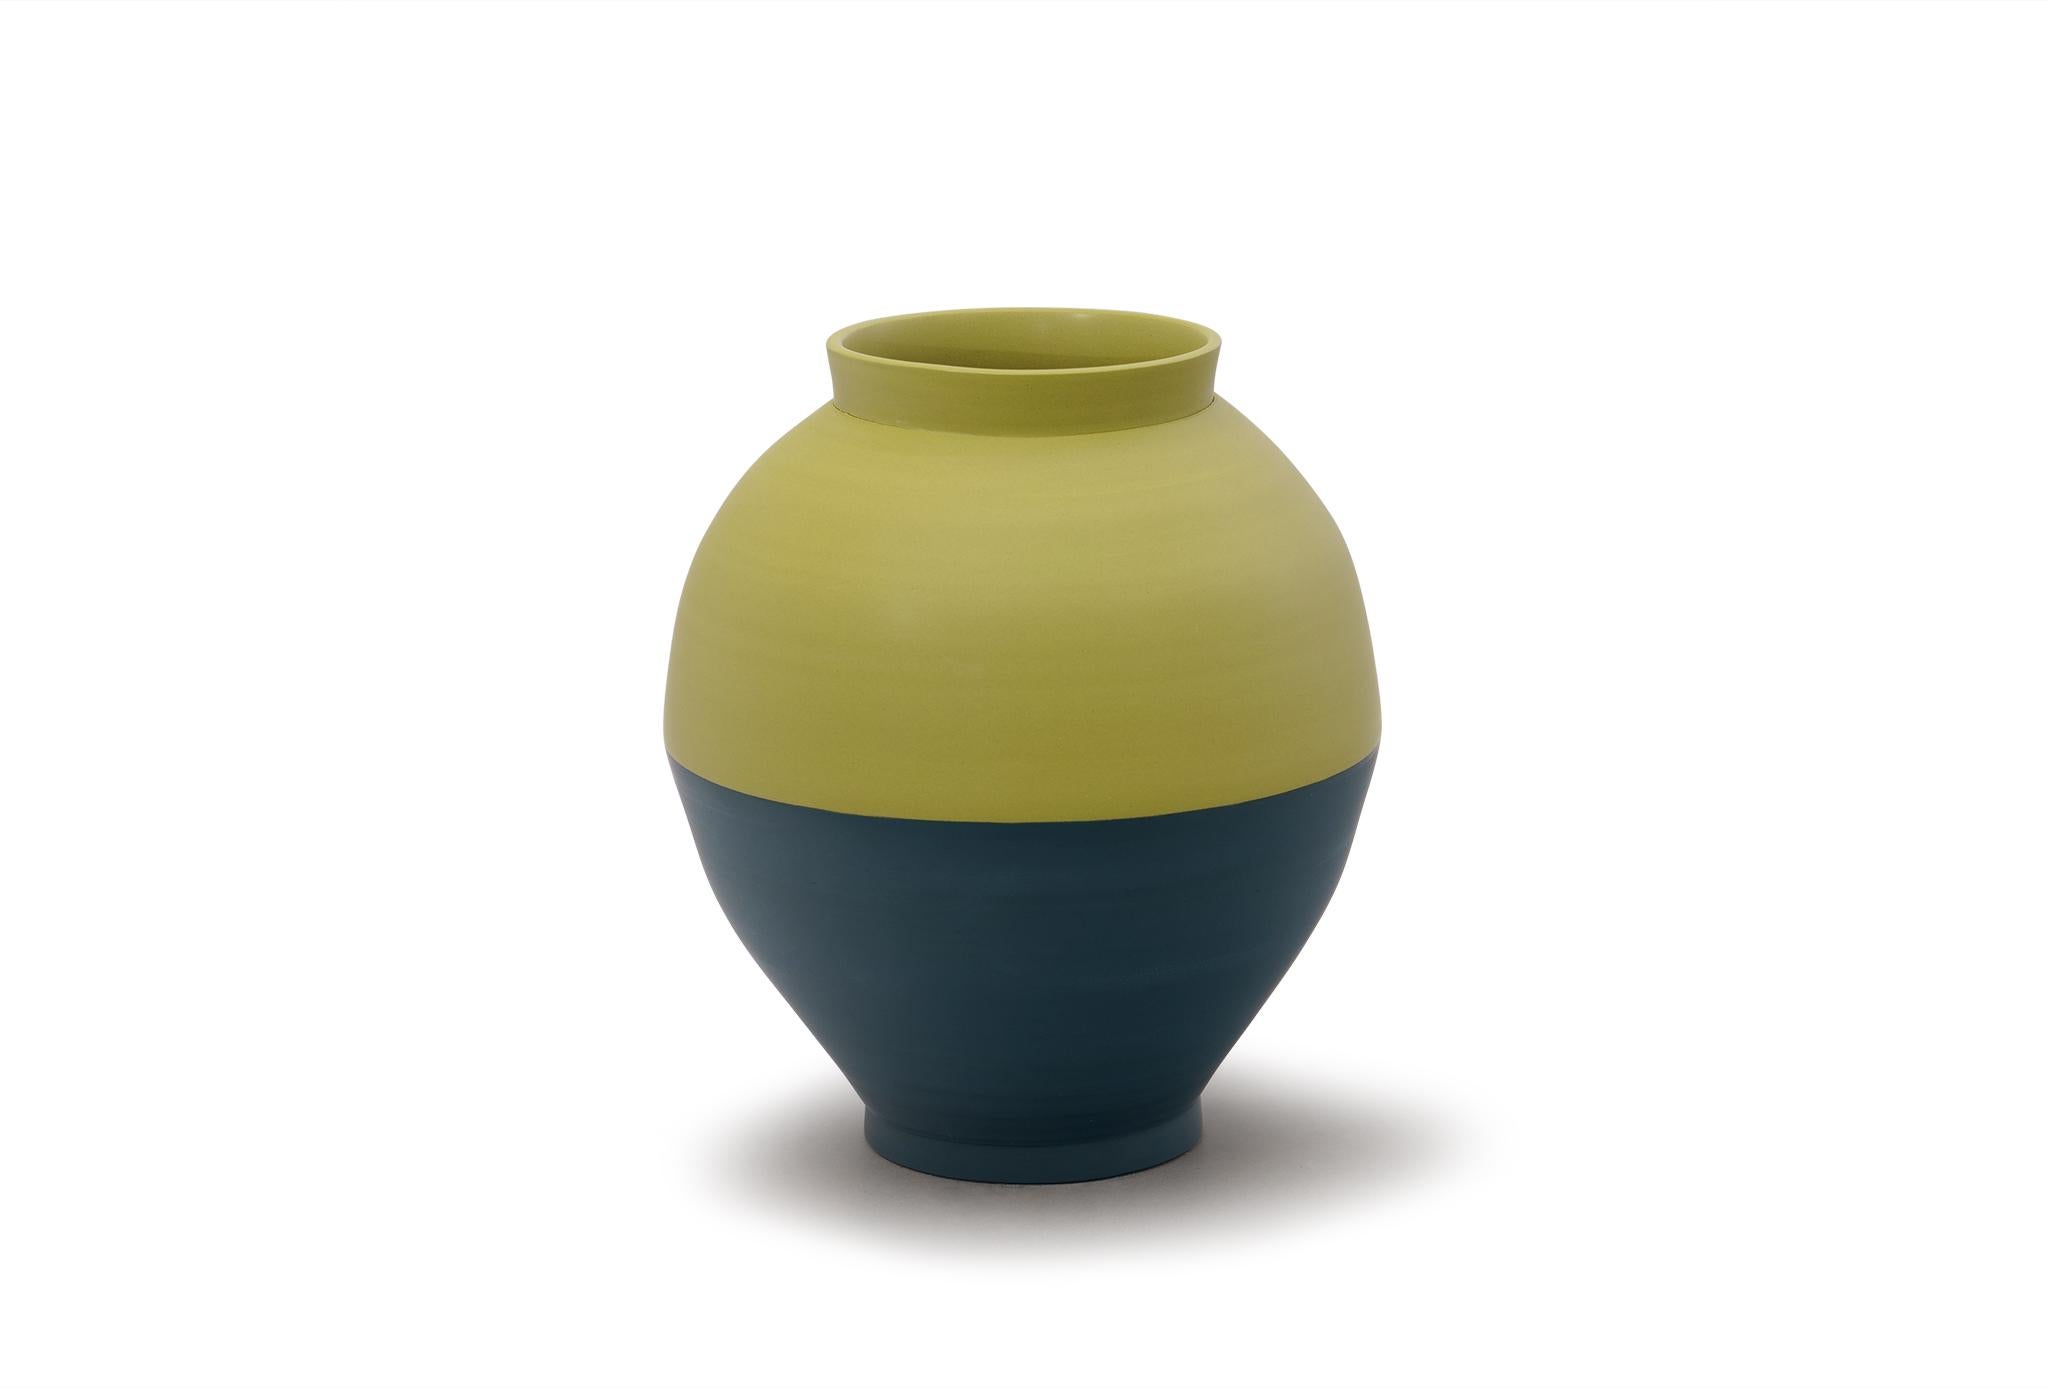 Demi-vase de Jung Hong
Pièce unique
Dimensions : L 24,5 x P 24,5 x H 29,5 cm
Matériaux : Porcelaine

J'utilise la technique du 